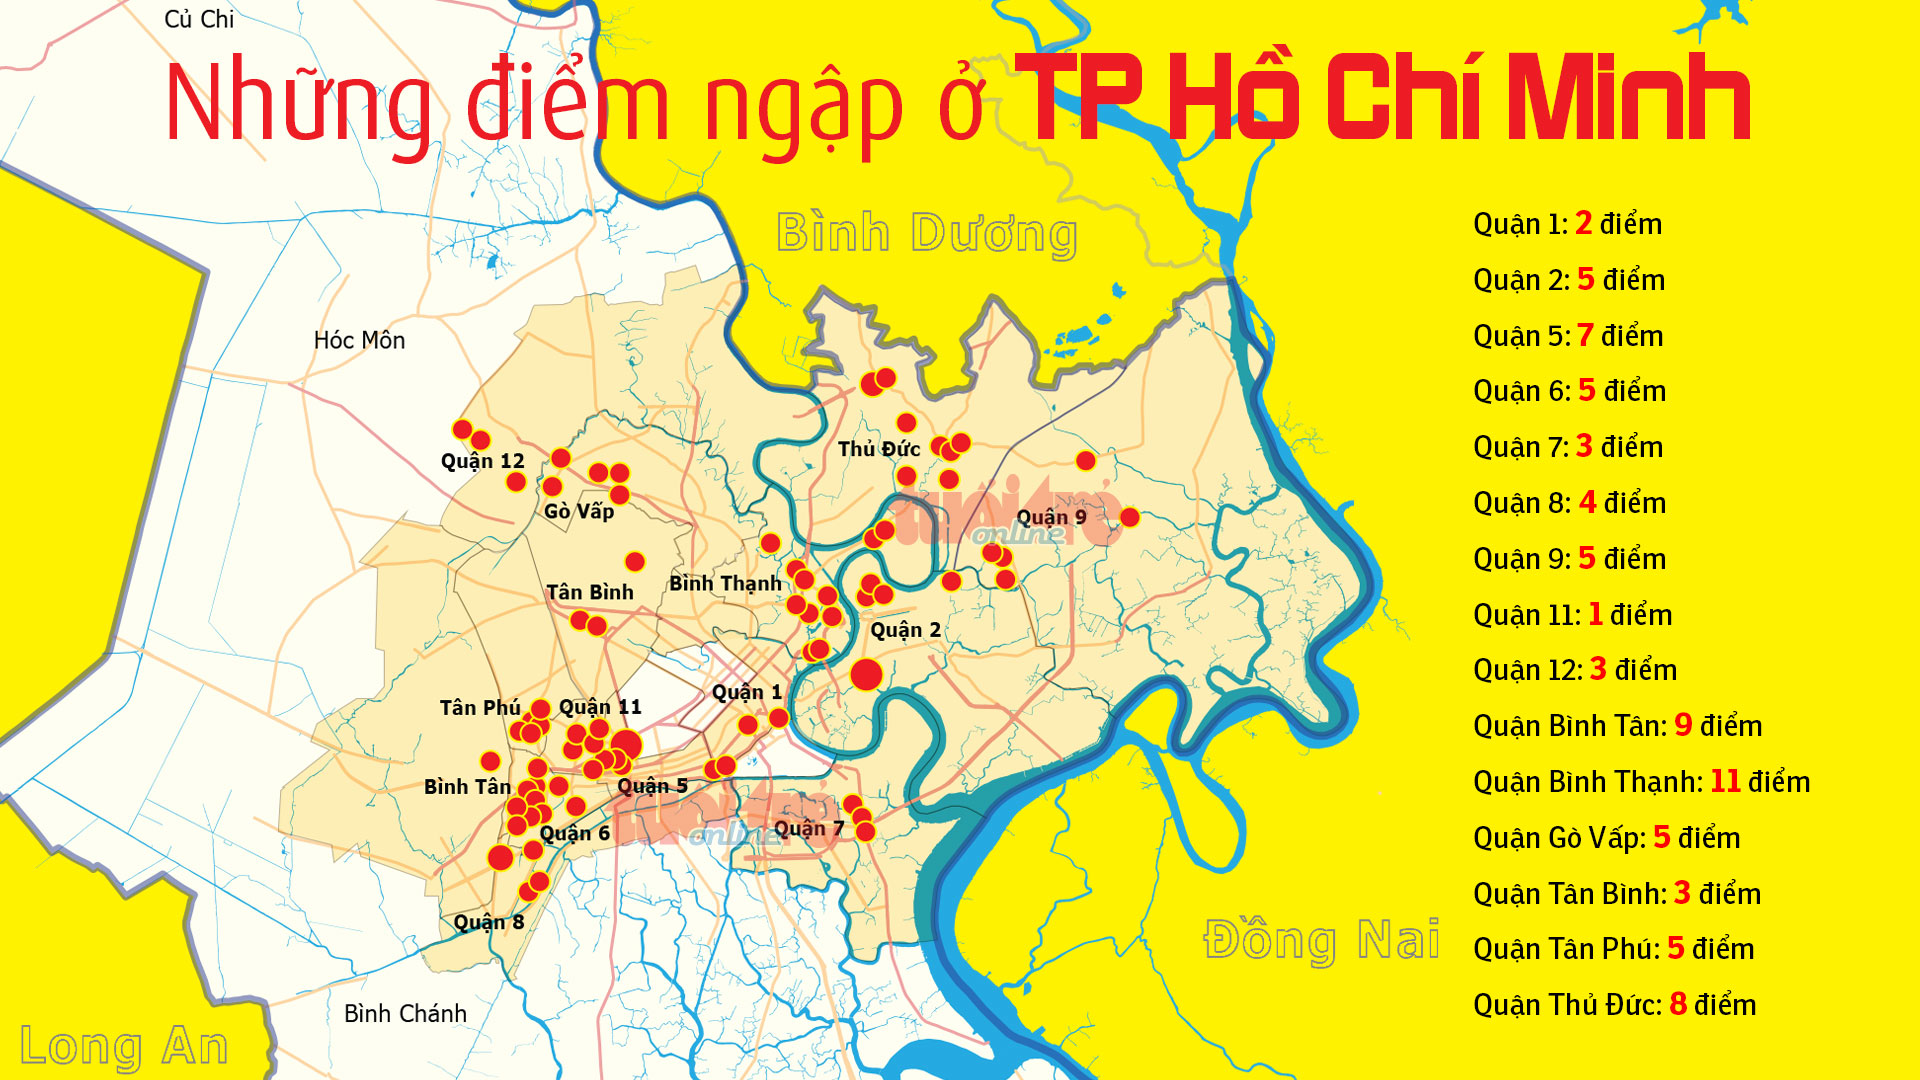 Điểm ngập úng Sài Gòn không còn là nỗi lo khi thành phố đã đưa vào hoạt động hệ thống xử lý nước mưa hiện đại. Bạn sẽ được khám phá những cảnh quan đẹp và không sợ bị ngập nước khi đến thăm Sài Gòn.